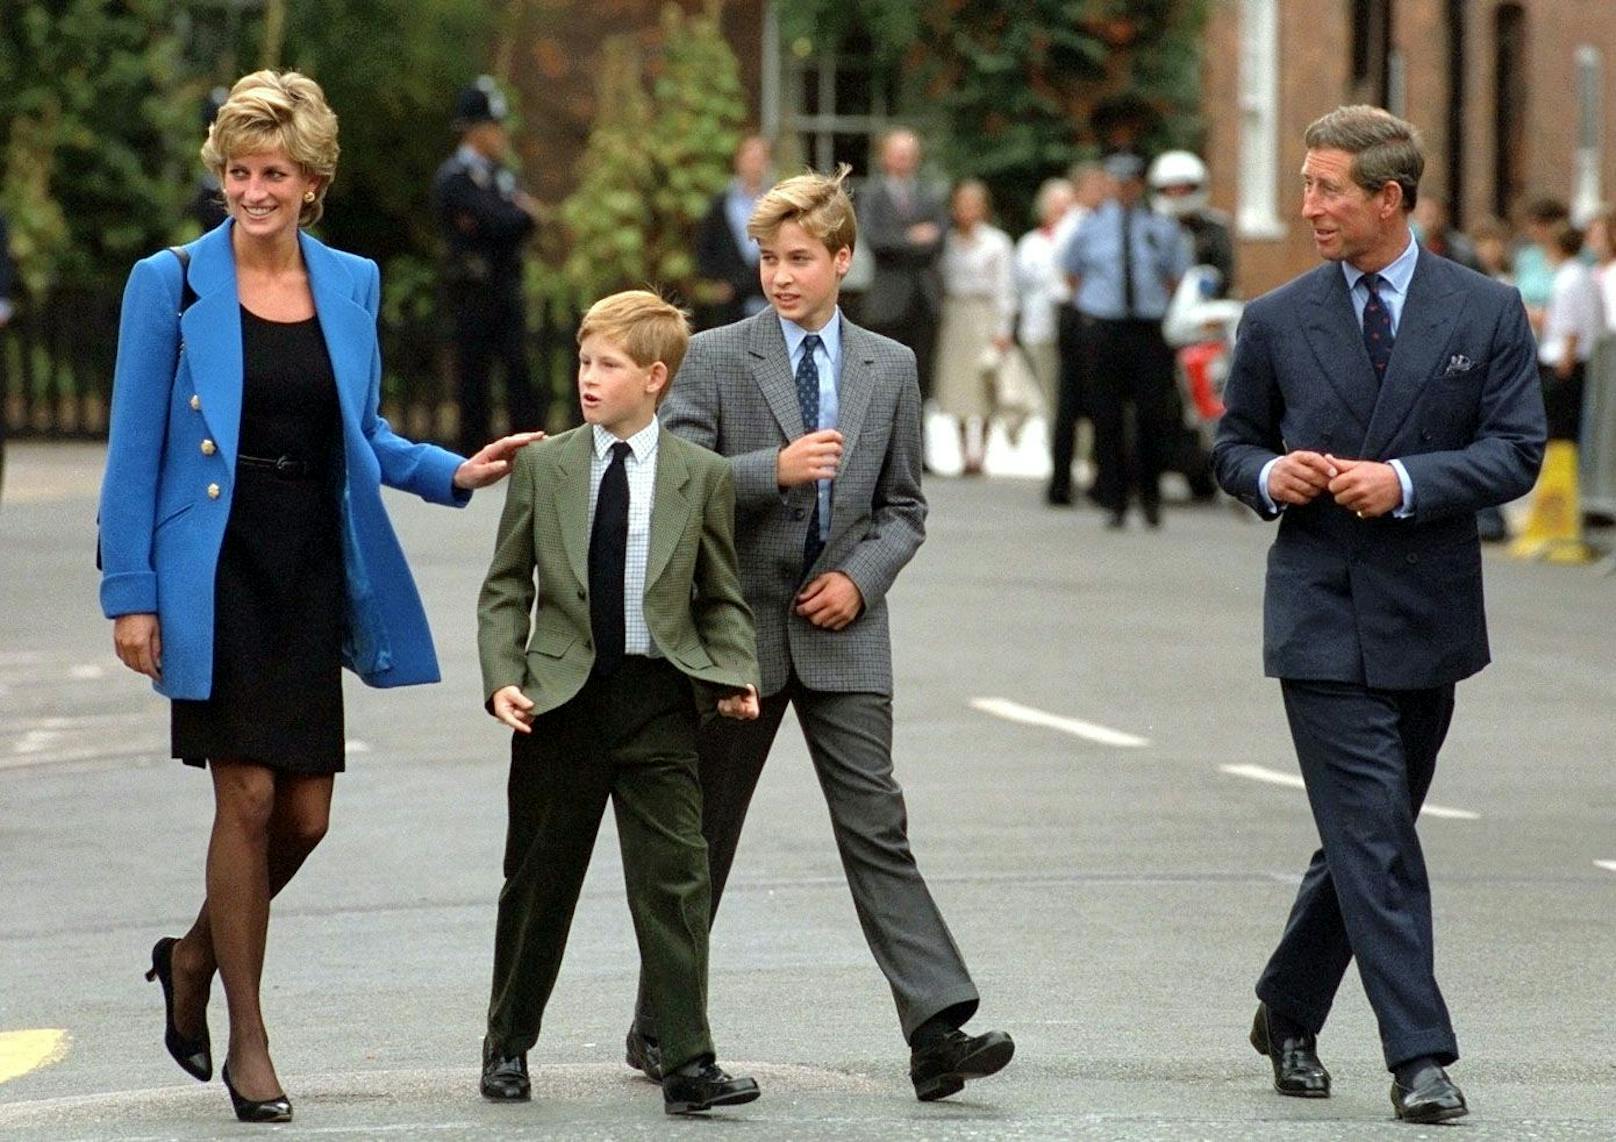 Das wichtigste Bindeglied: Mama Diana. Selbst nach der Scheidung zu Prinz Charles hielten die beiden zu ihrer Mutter.